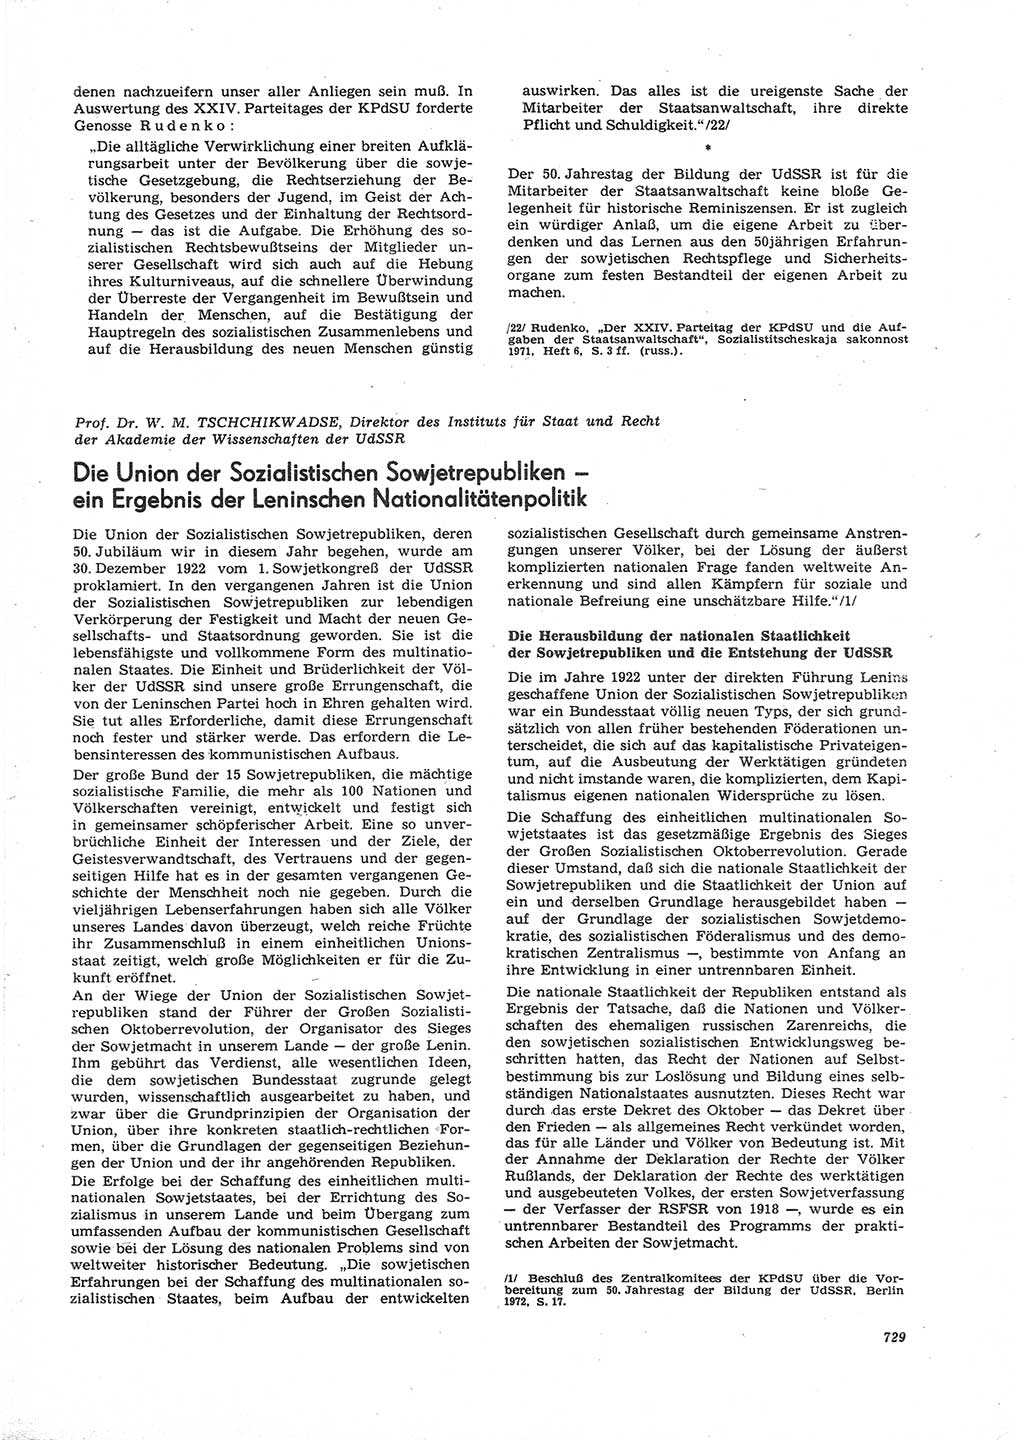 Neue Justiz (NJ), Zeitschrift für Recht und Rechtswissenschaft [Deutsche Demokratische Republik (DDR)], 26. Jahrgang 1972, Seite 729 (NJ DDR 1972, S. 729)